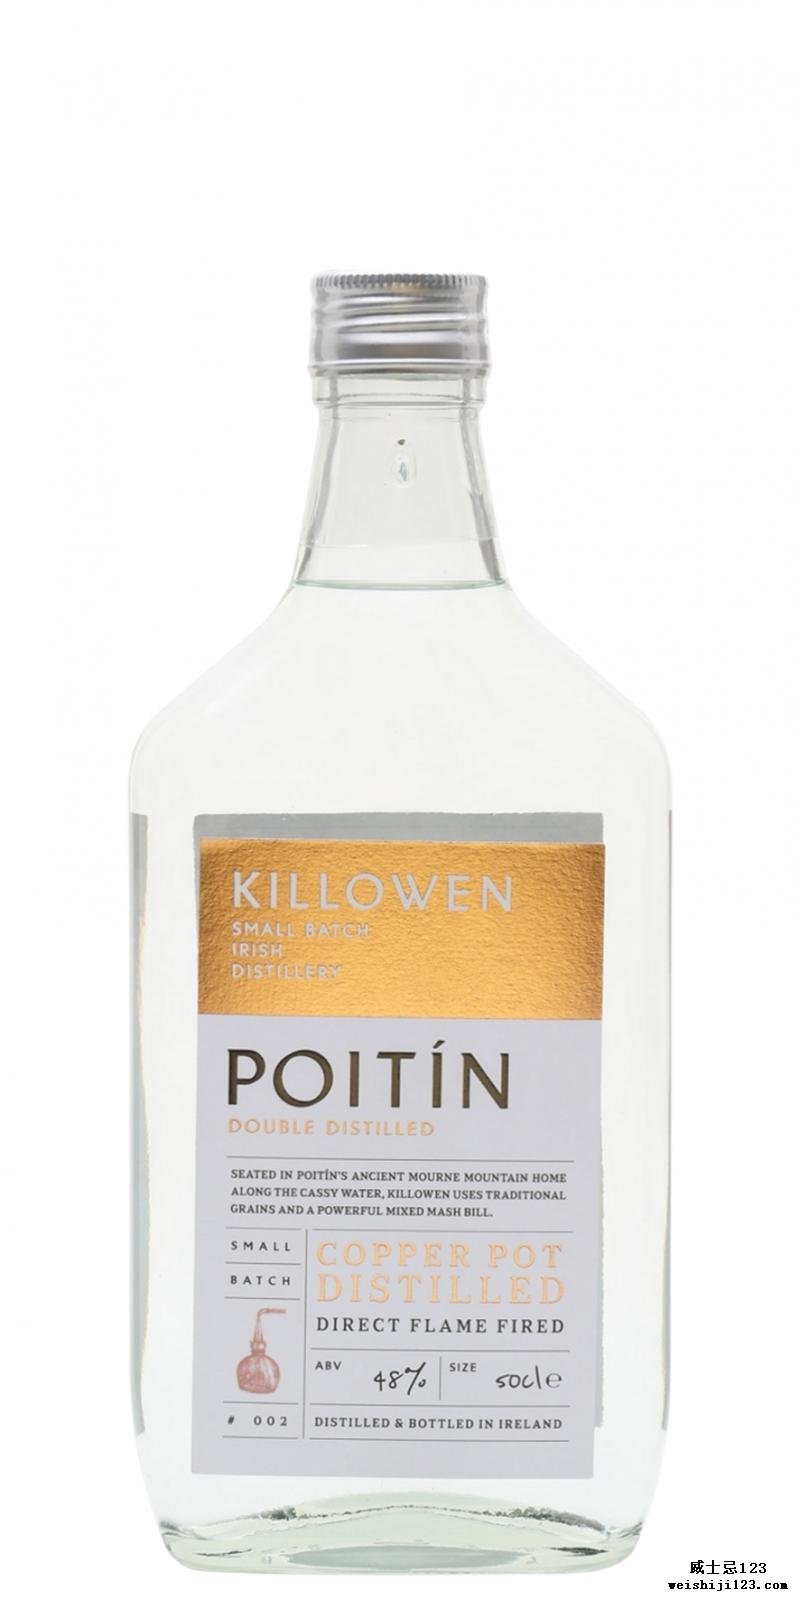 Killowen Poitín